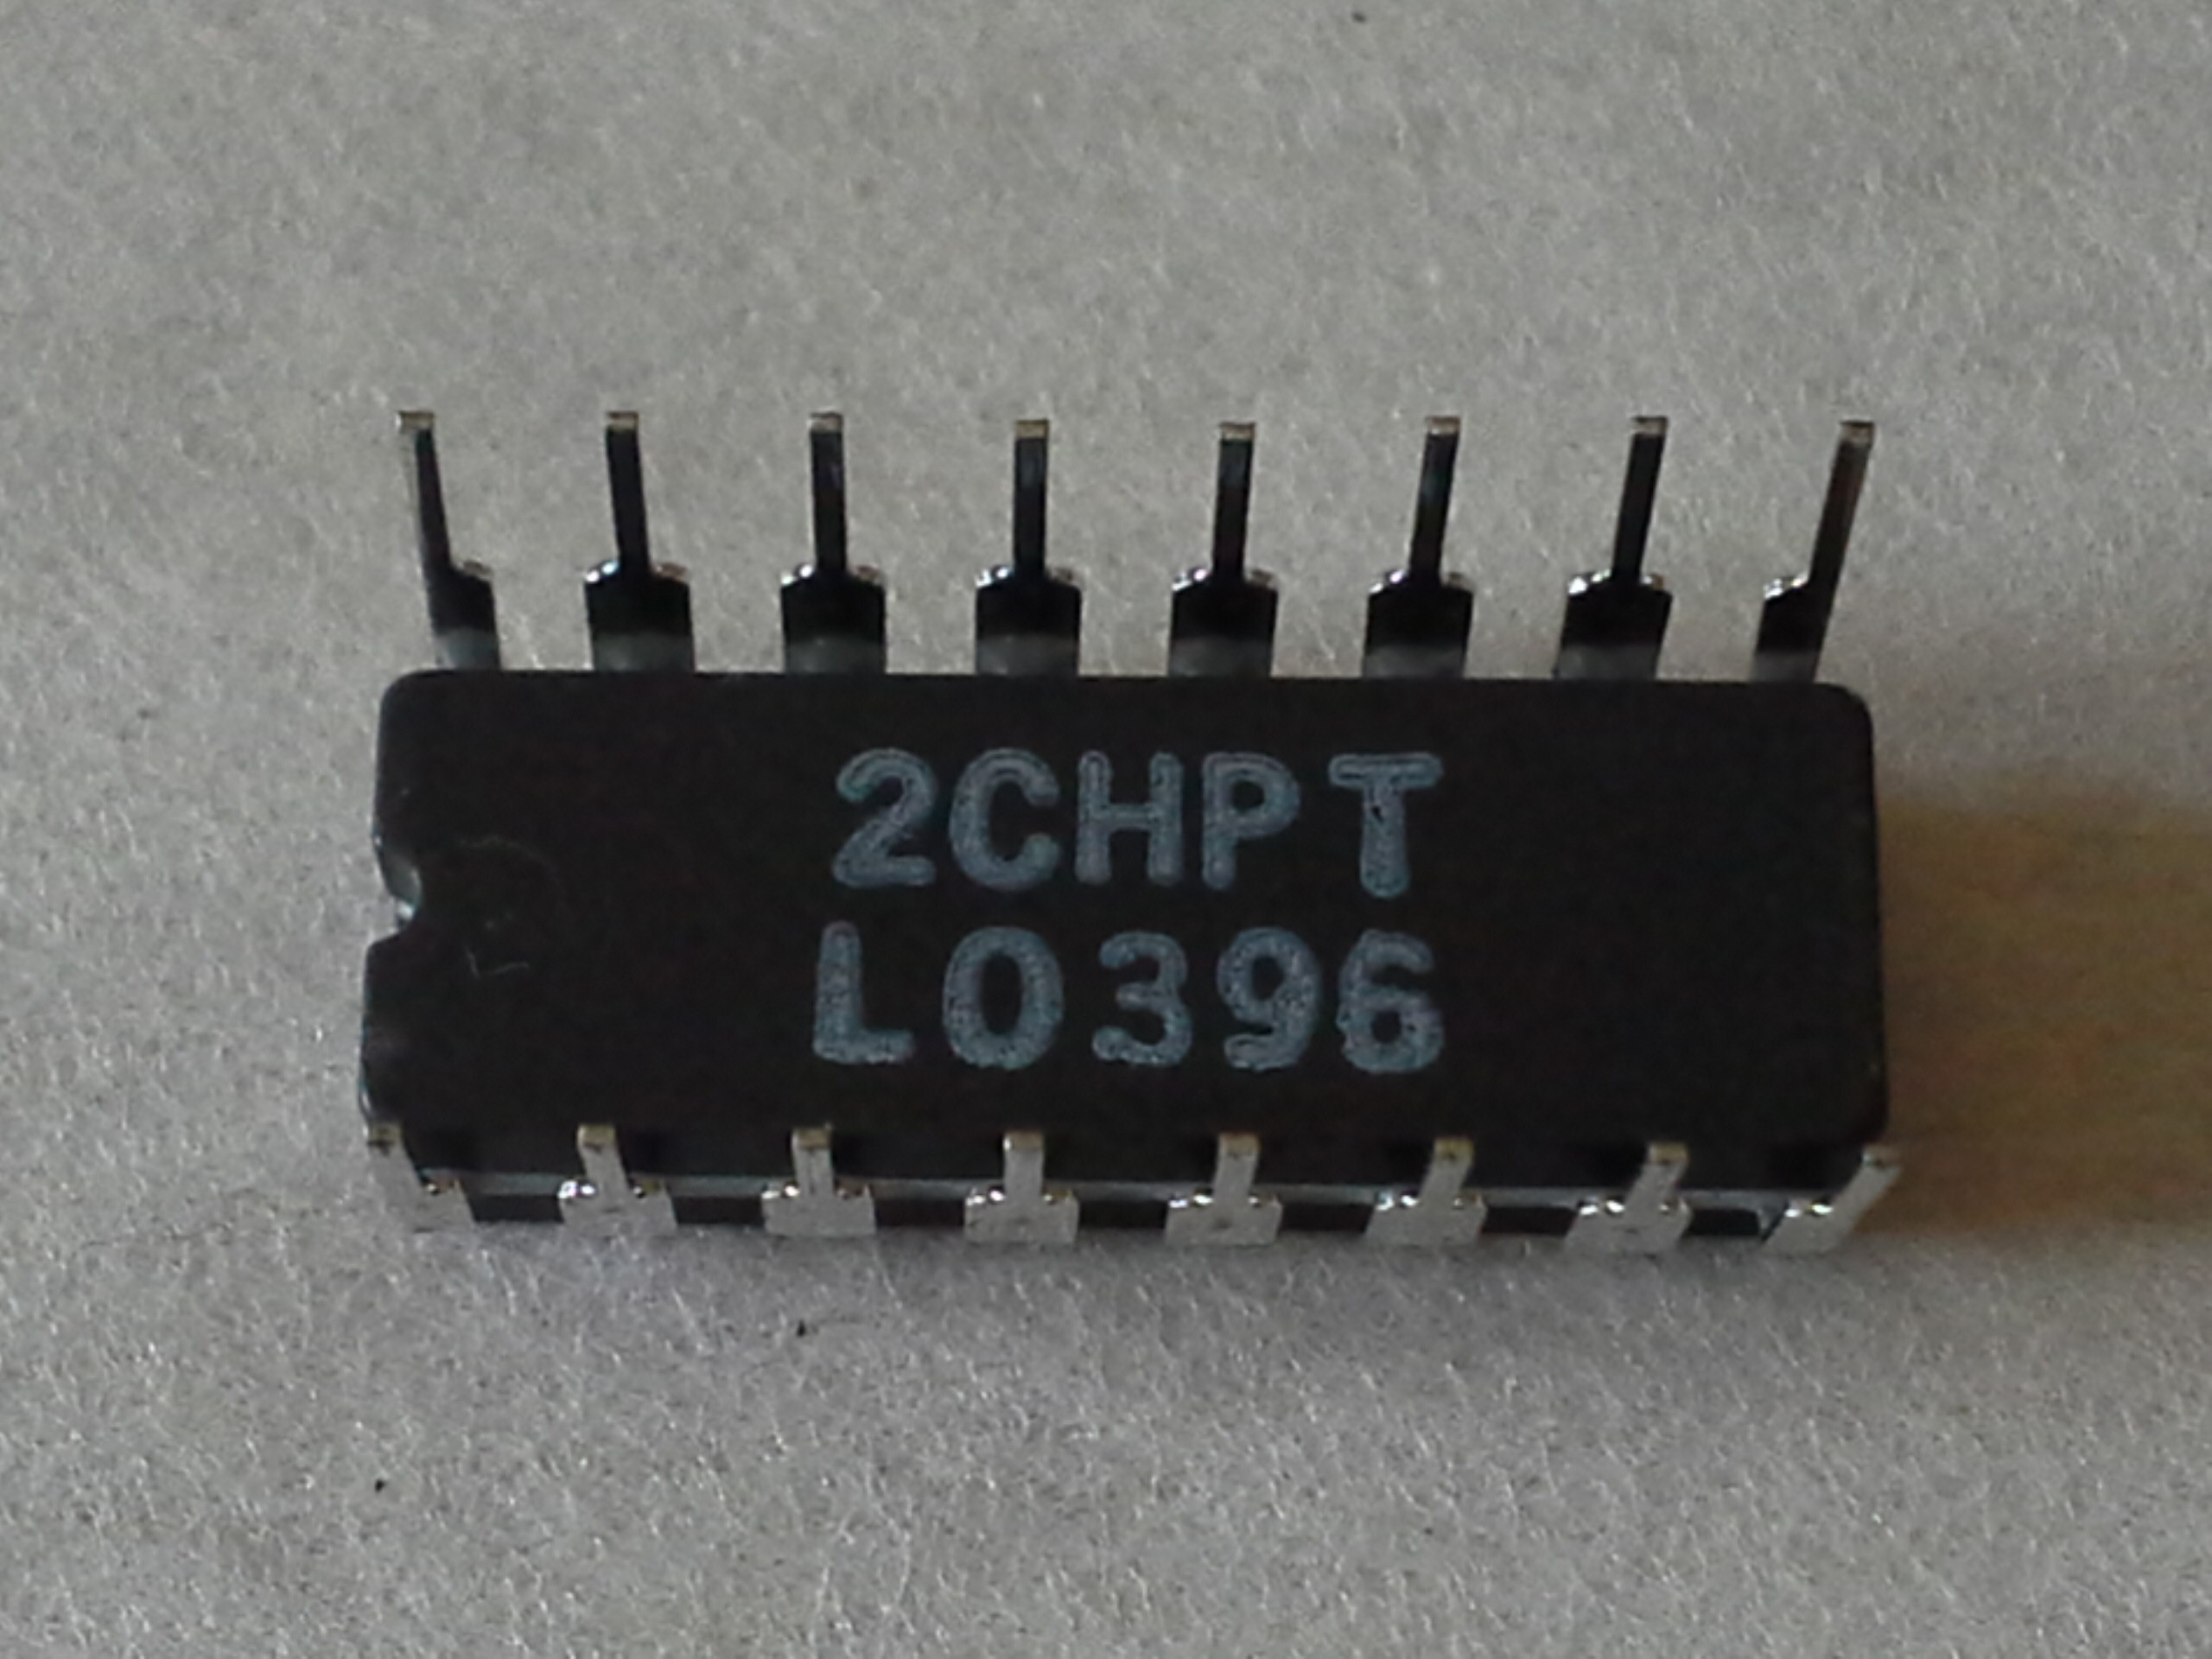 IC`S CD45038F